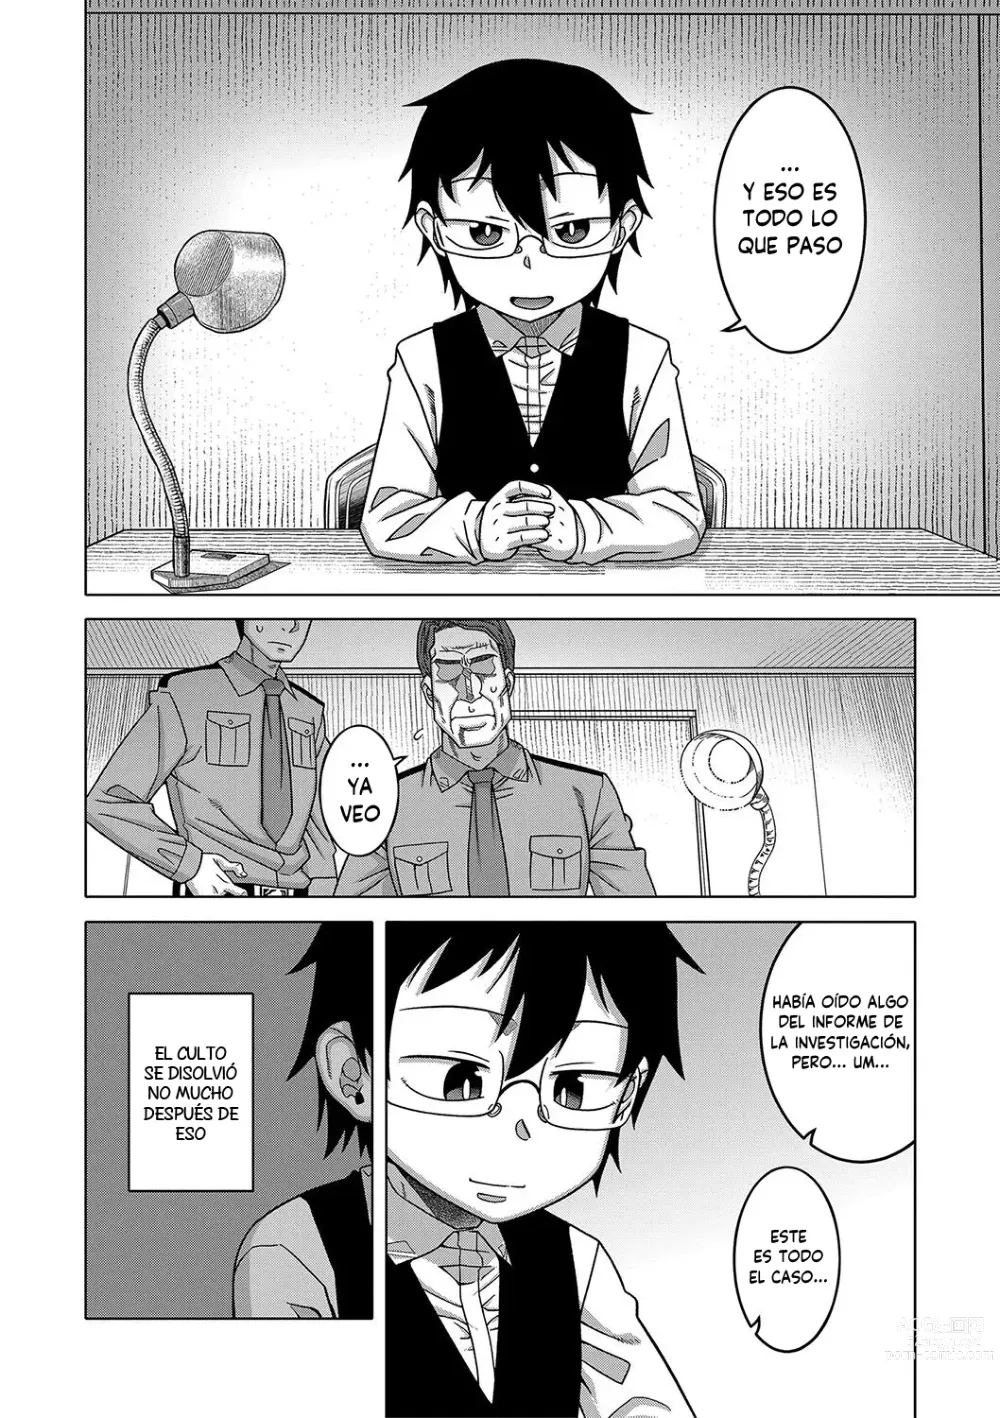 Page 205 of manga Kami-sama no Tsukurikata